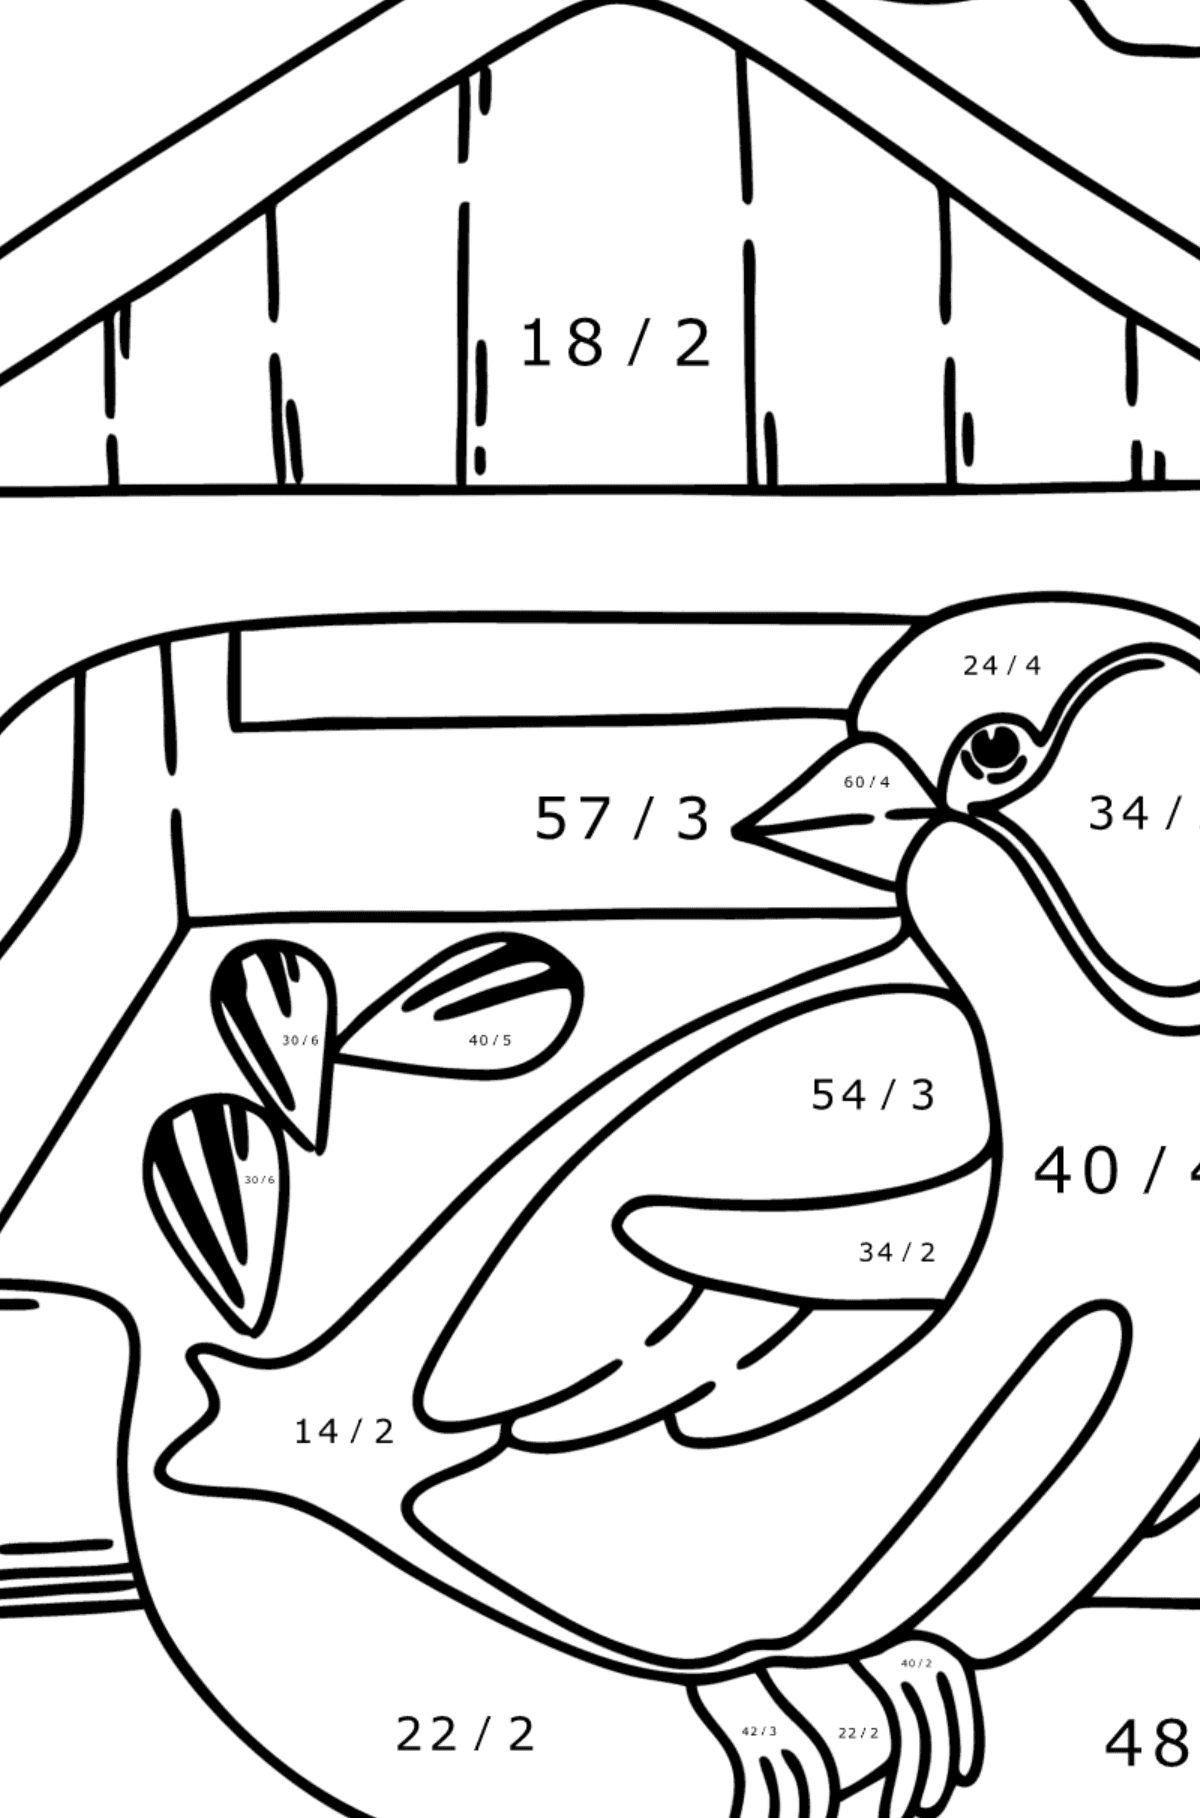 Tegning til farvning foderautomater til fugle - Matematisk farvelægning side -- Division for børn